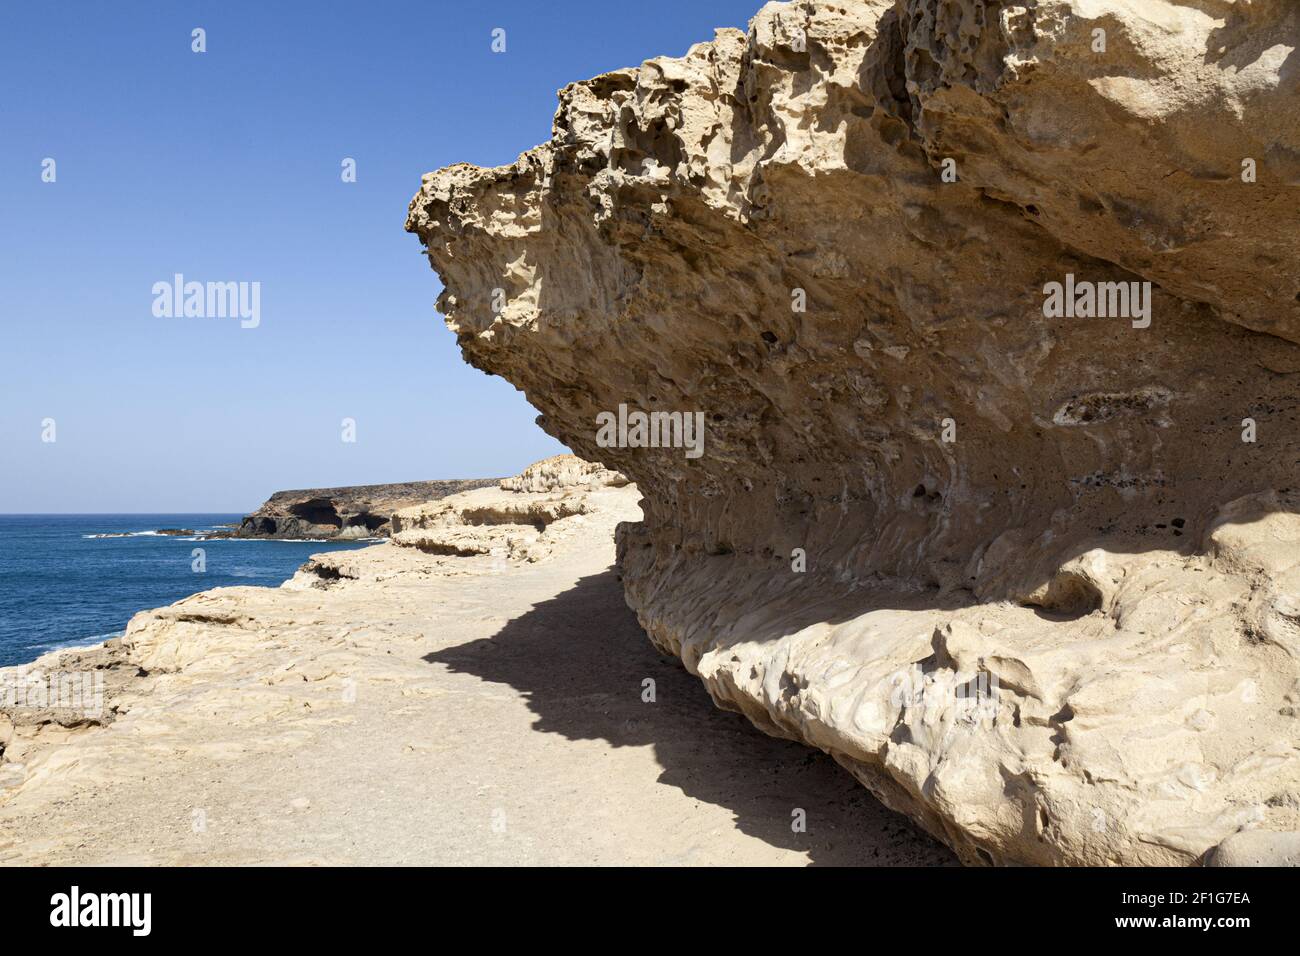 Des formations rocheuses ondulées à côté du sentier en haut de la falaise à Ajuy, Fuerteventura, îles Canaries Banque D'Images